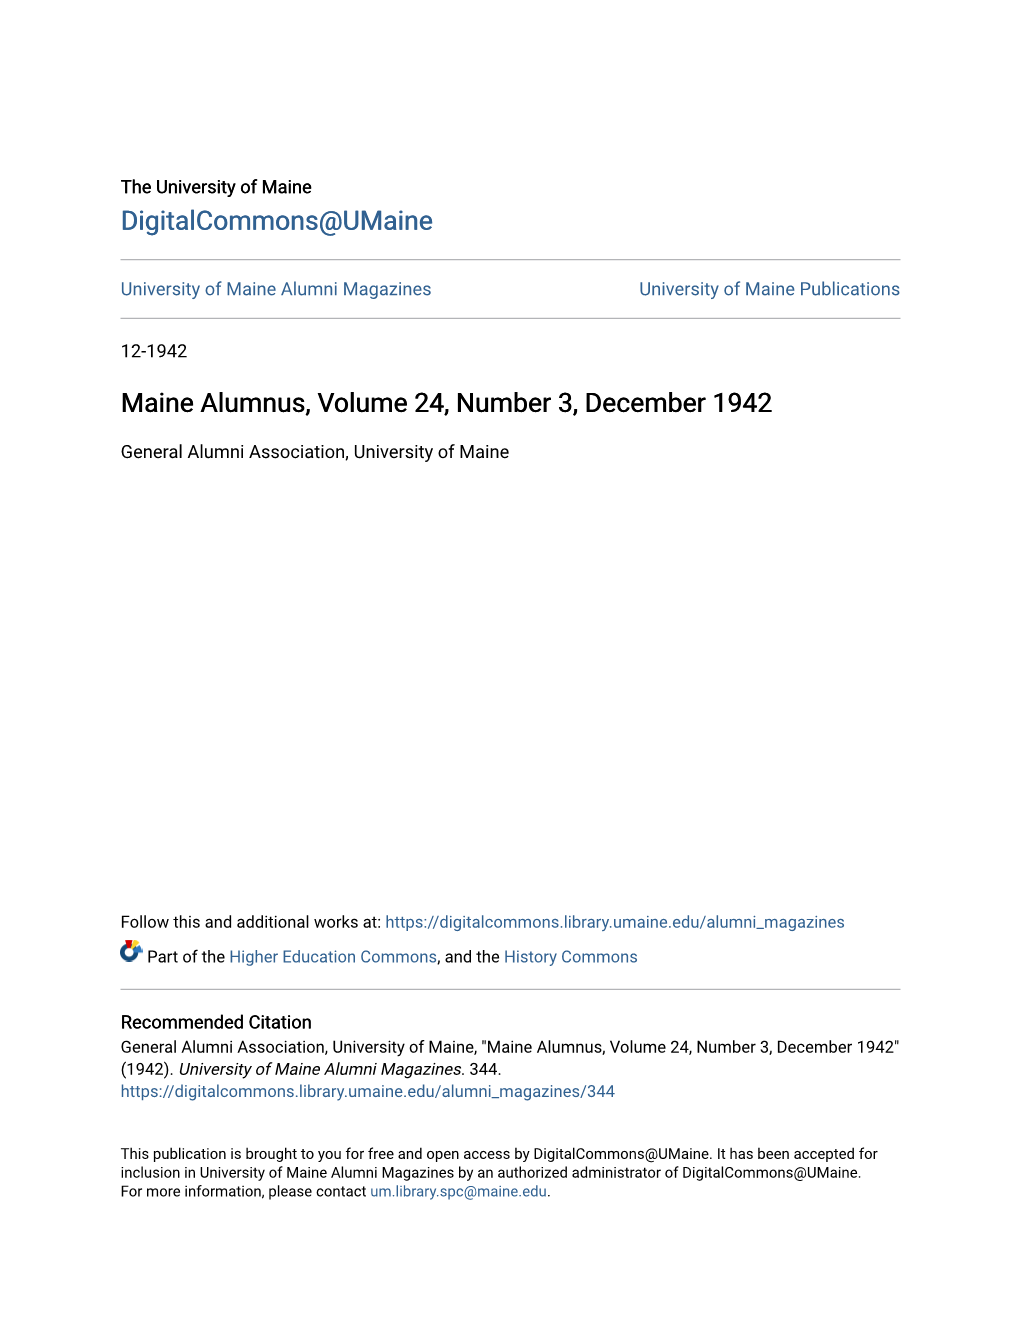 Maine Alumnus, Volume 24, Number 3, December 1942